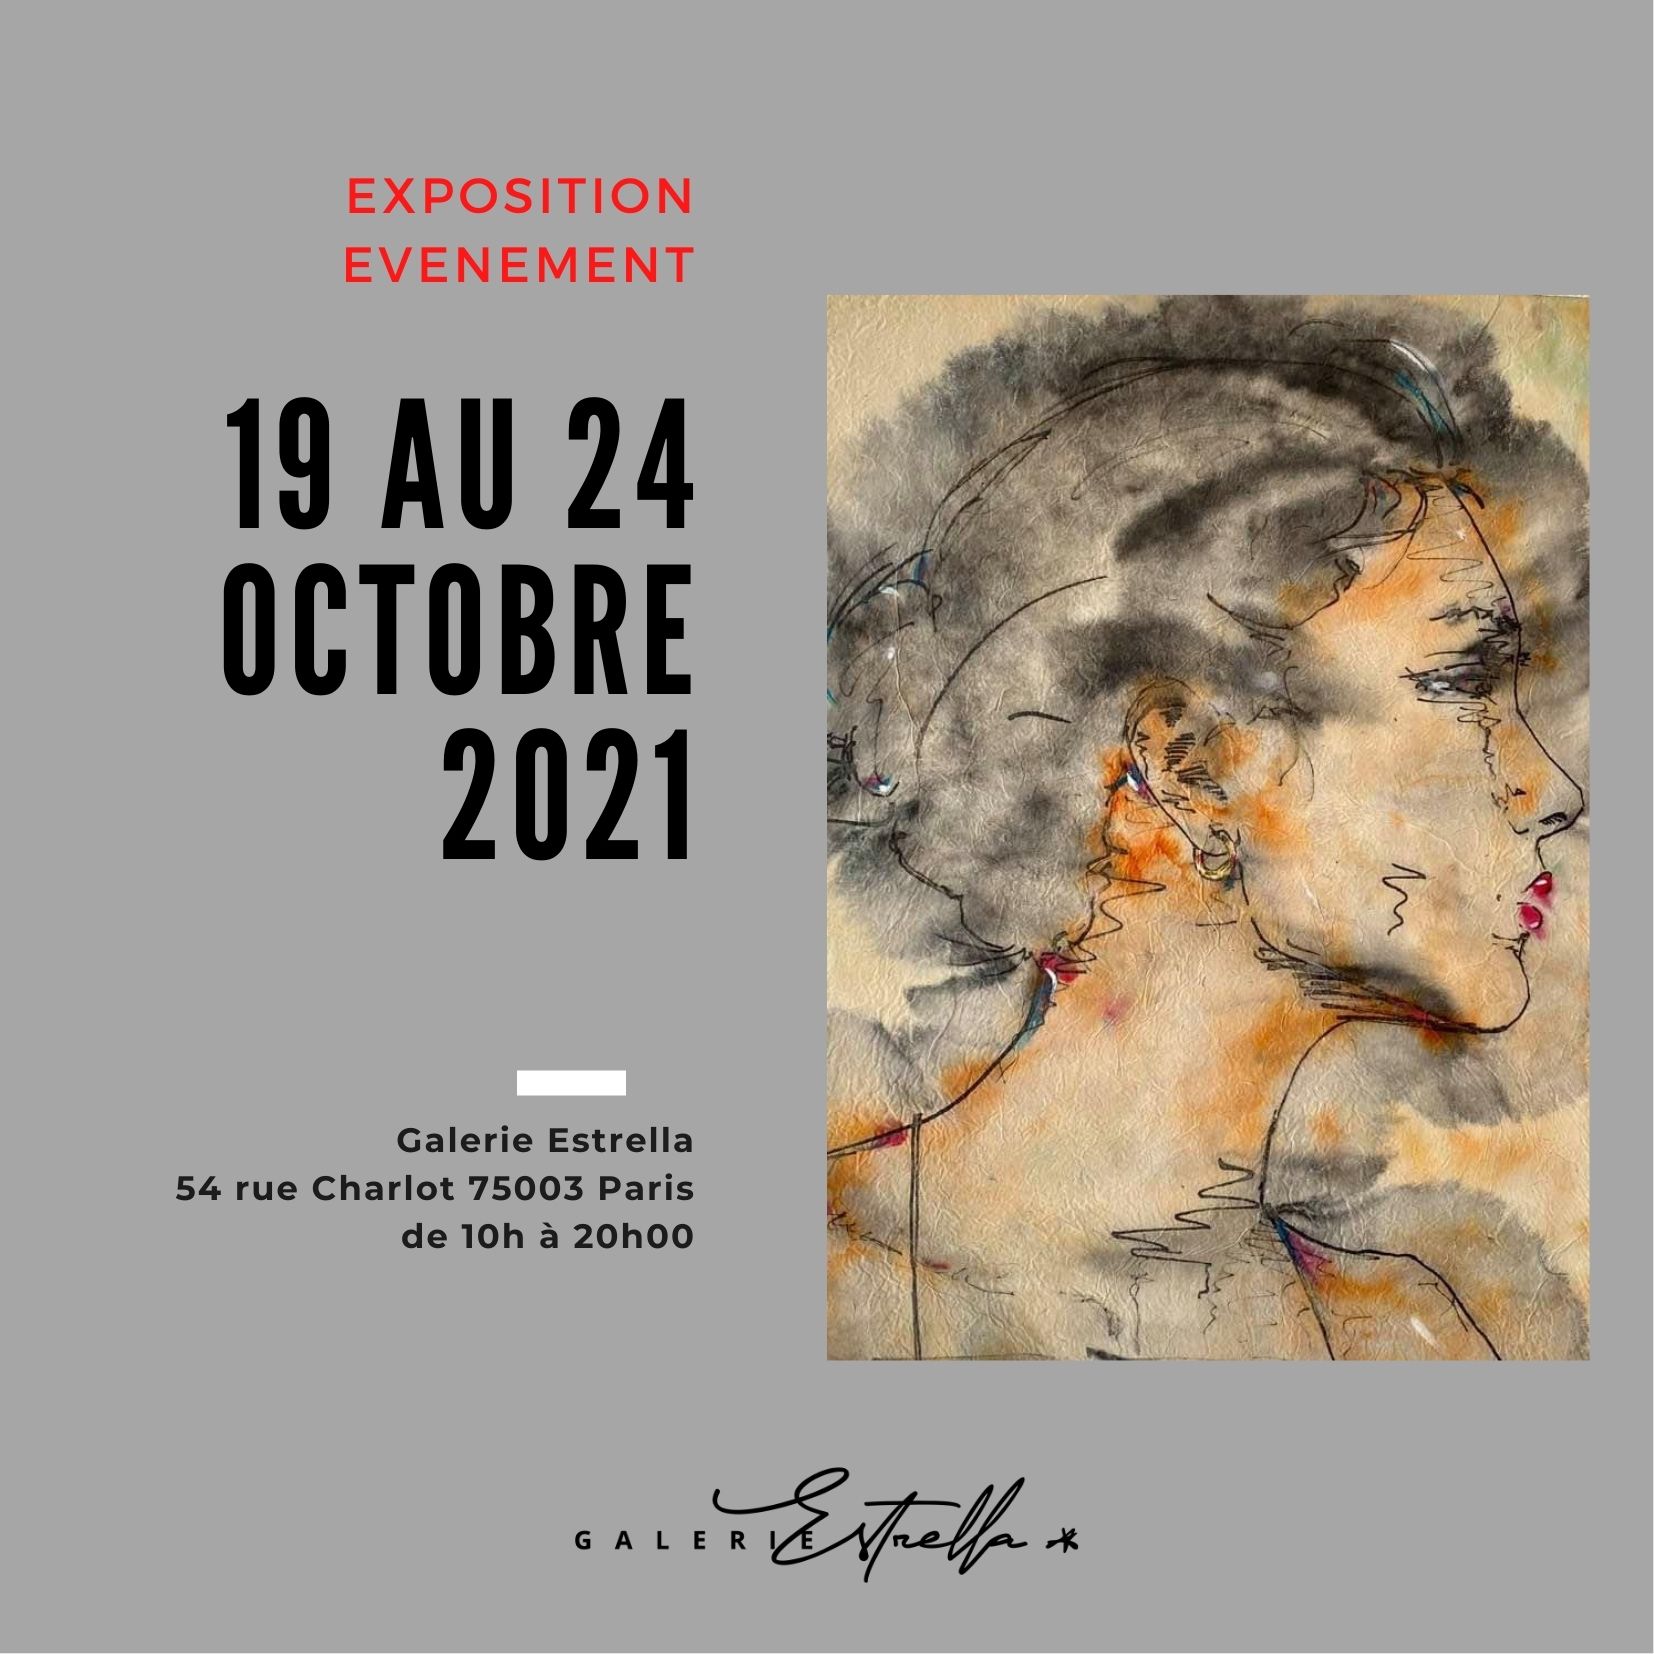 Lire la suite à propos de l’article “Une rencontre, une histoire, une relation” du 19 au 24 octobre 2021 à Paris